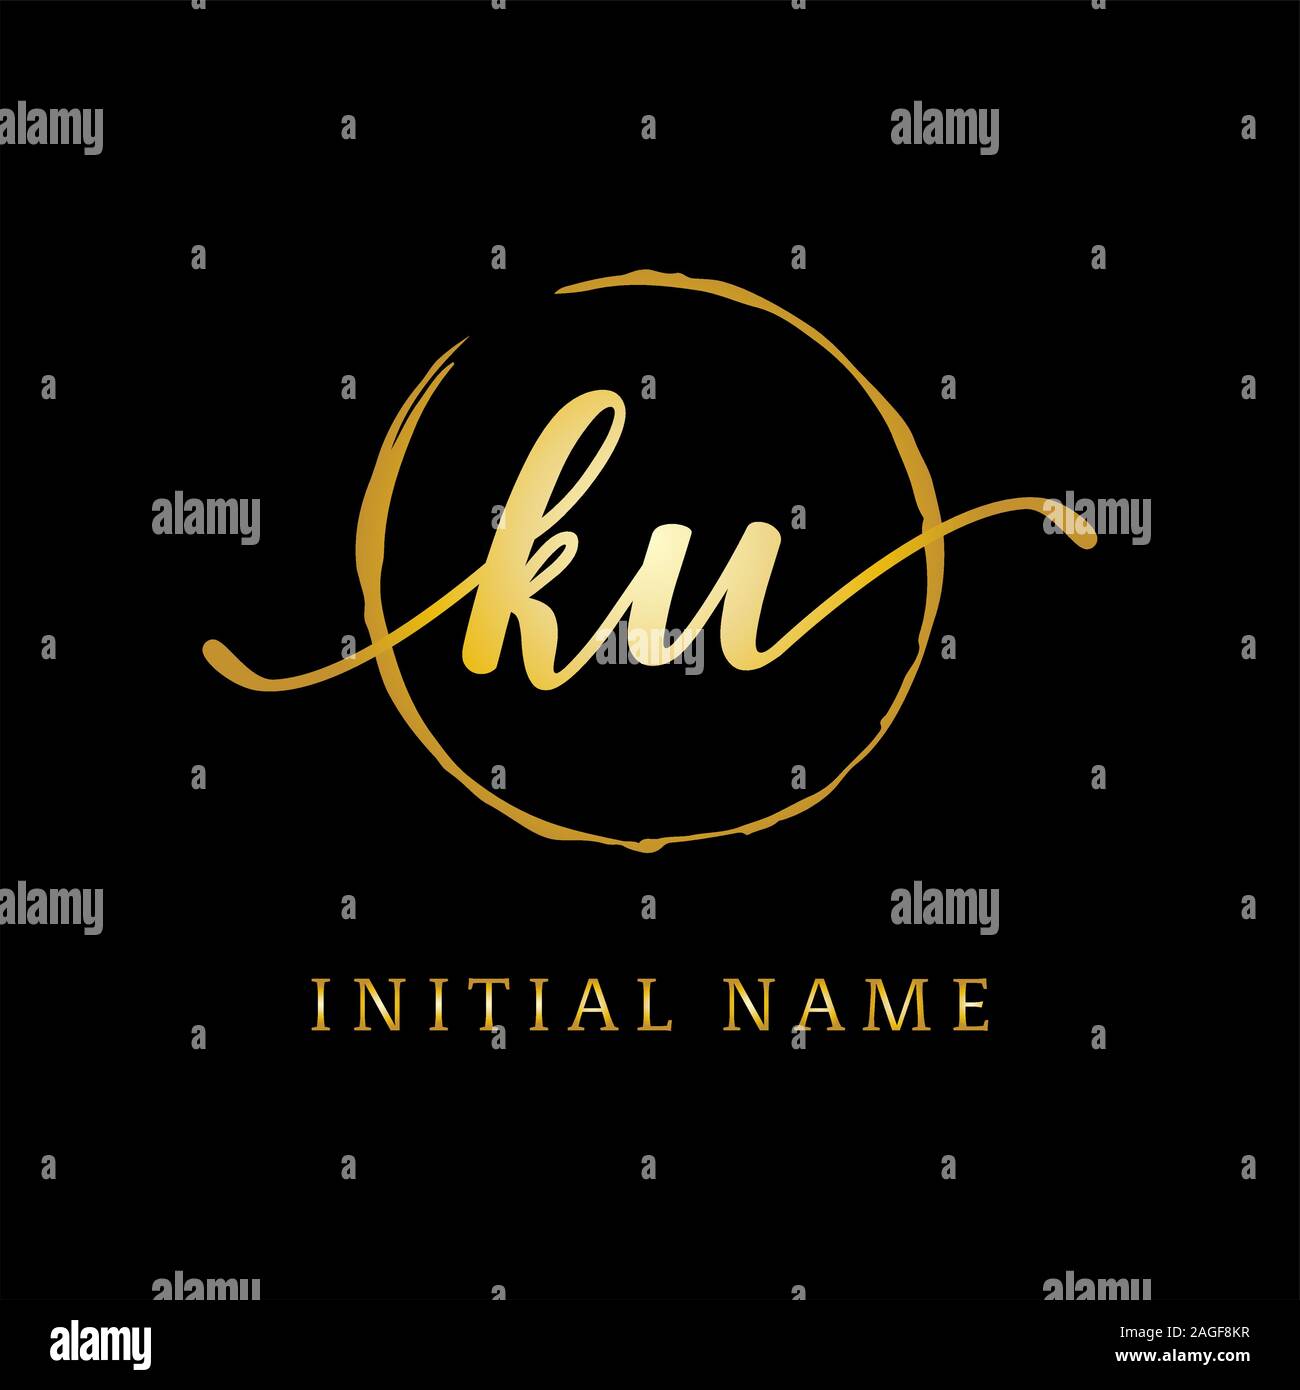 Beauté, inspiration logo KU logo design de luxe, premier nom du logo Illustration de Vecteur